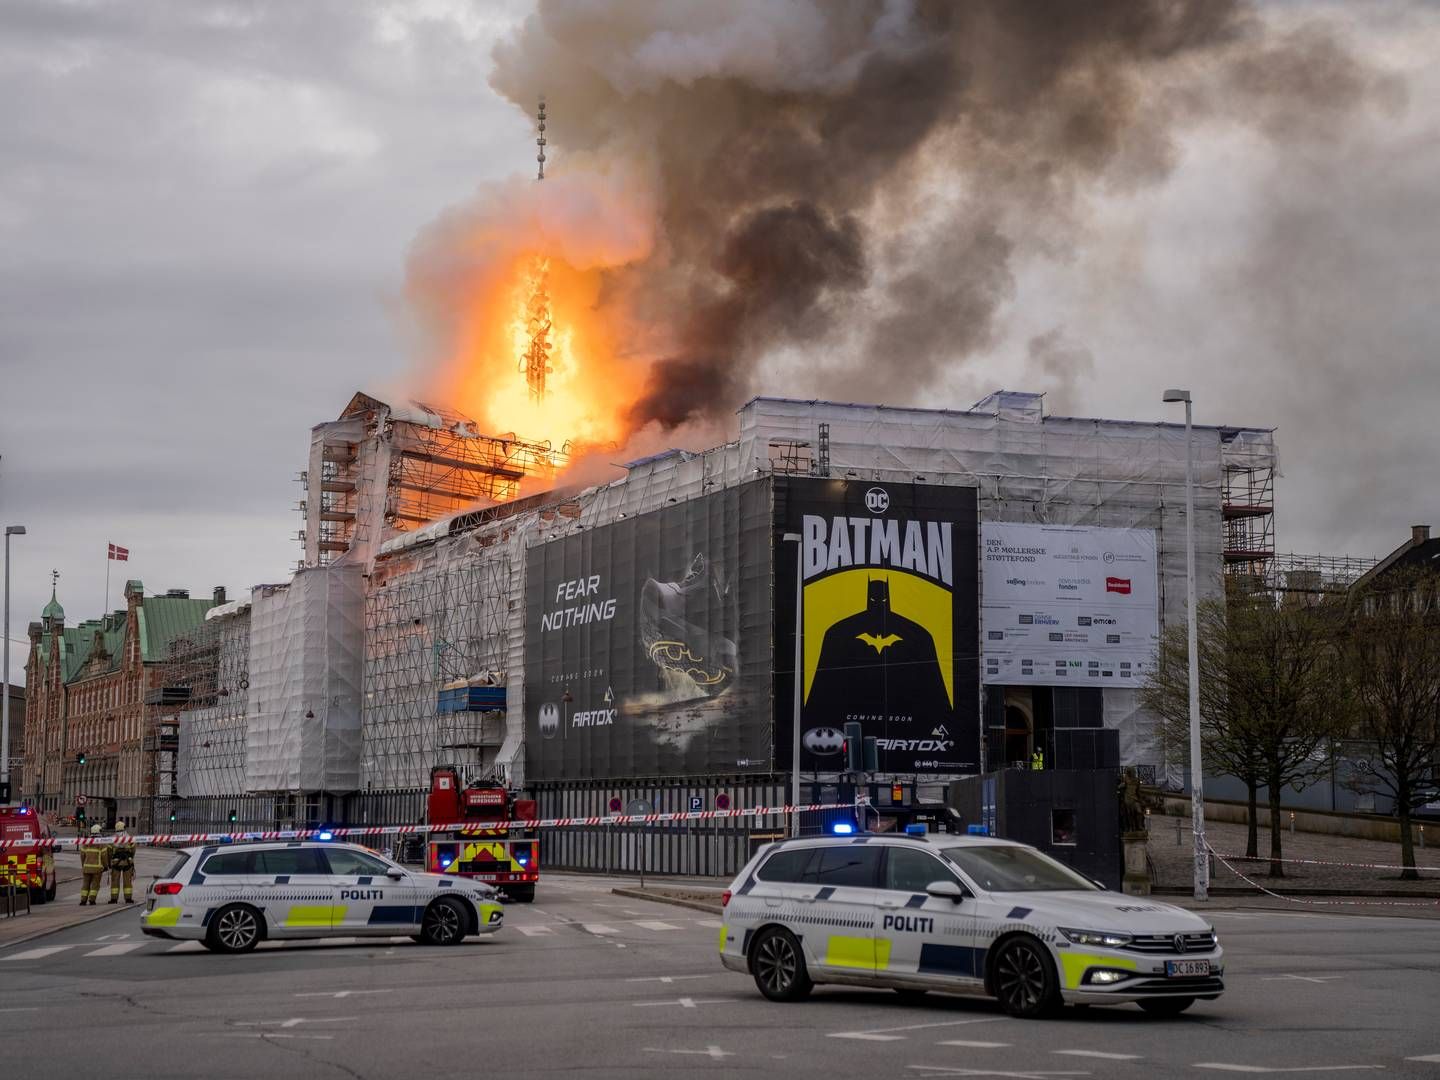 Københavns Kommunes Teknik- og Miljøforvaltning havde dagen inden branden udstedt påbud om nedtagning af Airtox-reklamen, men man havde ikke politianmeldt reklamebureauet bag. | Foto: Ida Marie Odgaard/Ritzau Scanpix